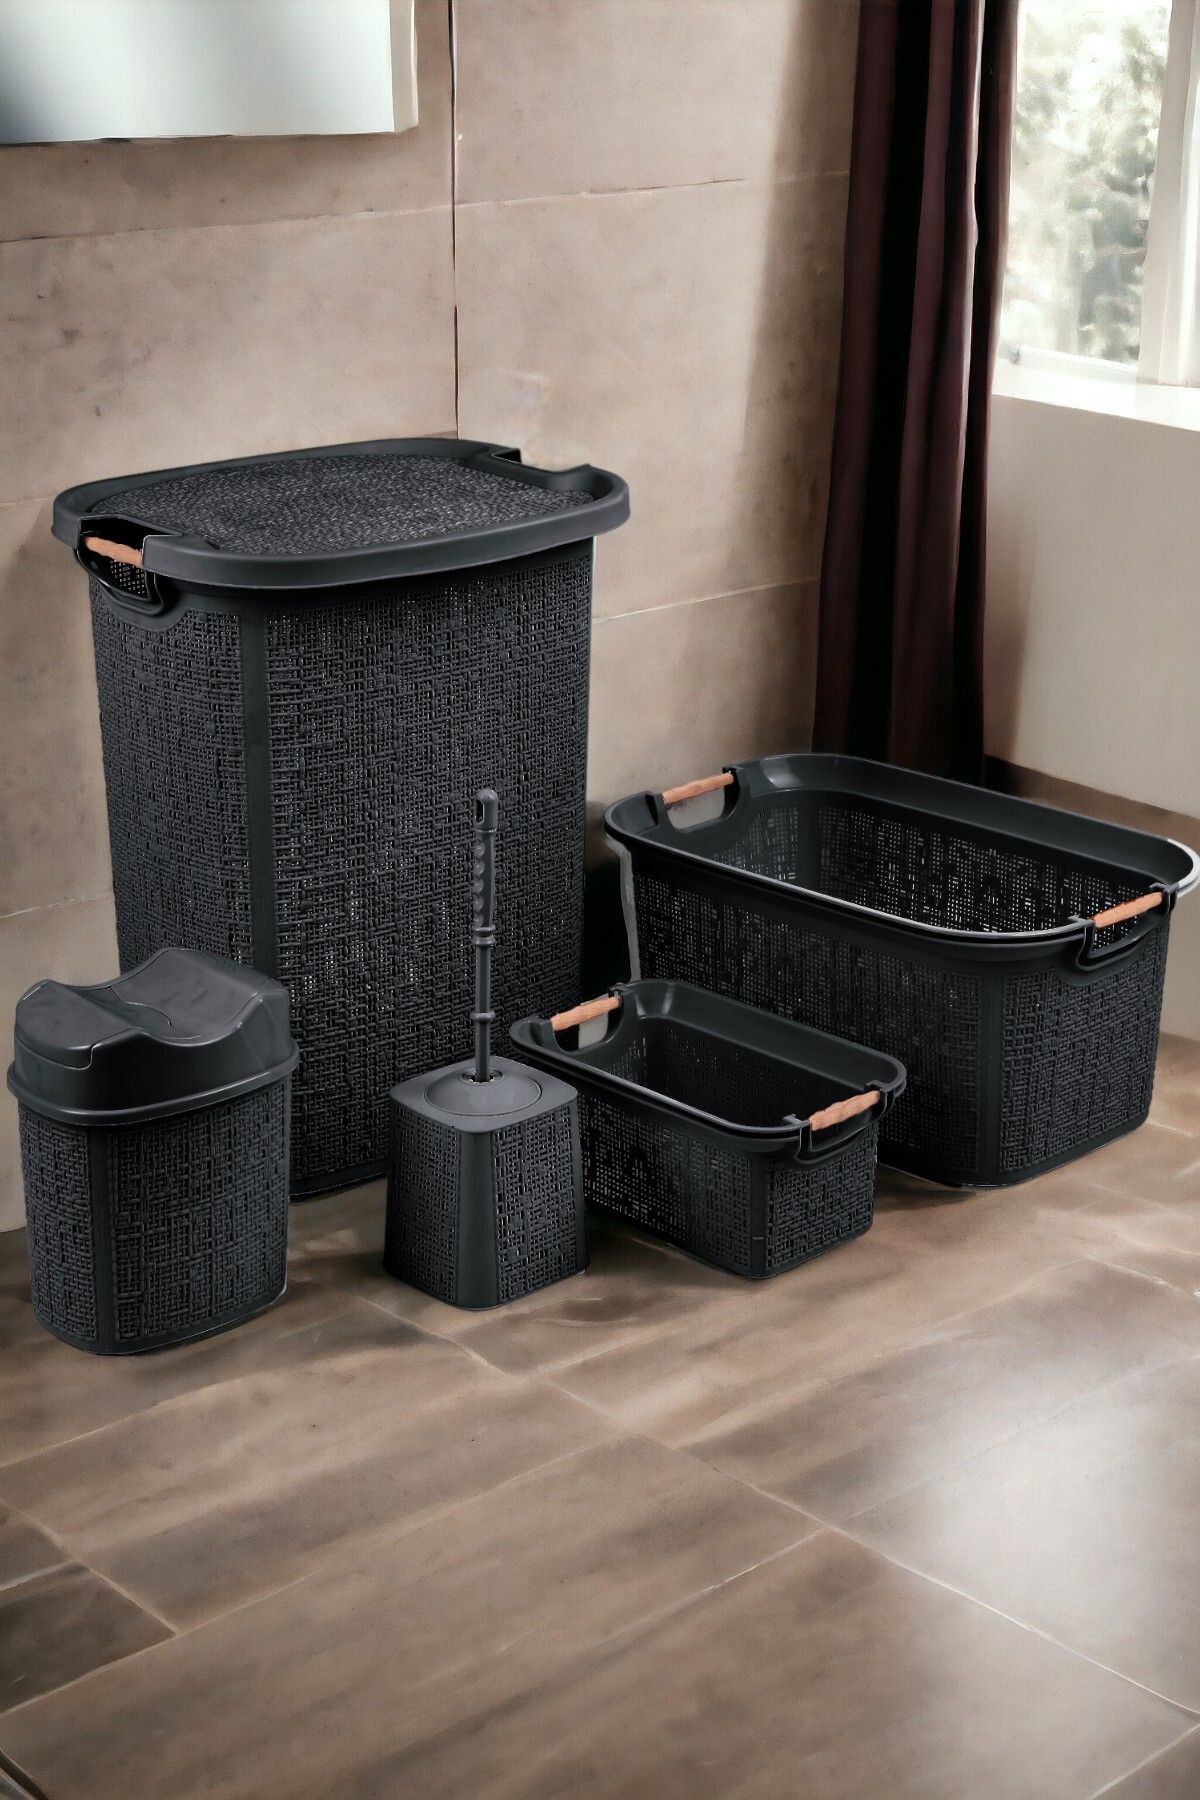 İronika 5 Parça Kirli Çamaşır Sepeti Çöp Kovası Klozet Fırçası Banyo Tuvalet Klozet Takımı Çeyiz Set